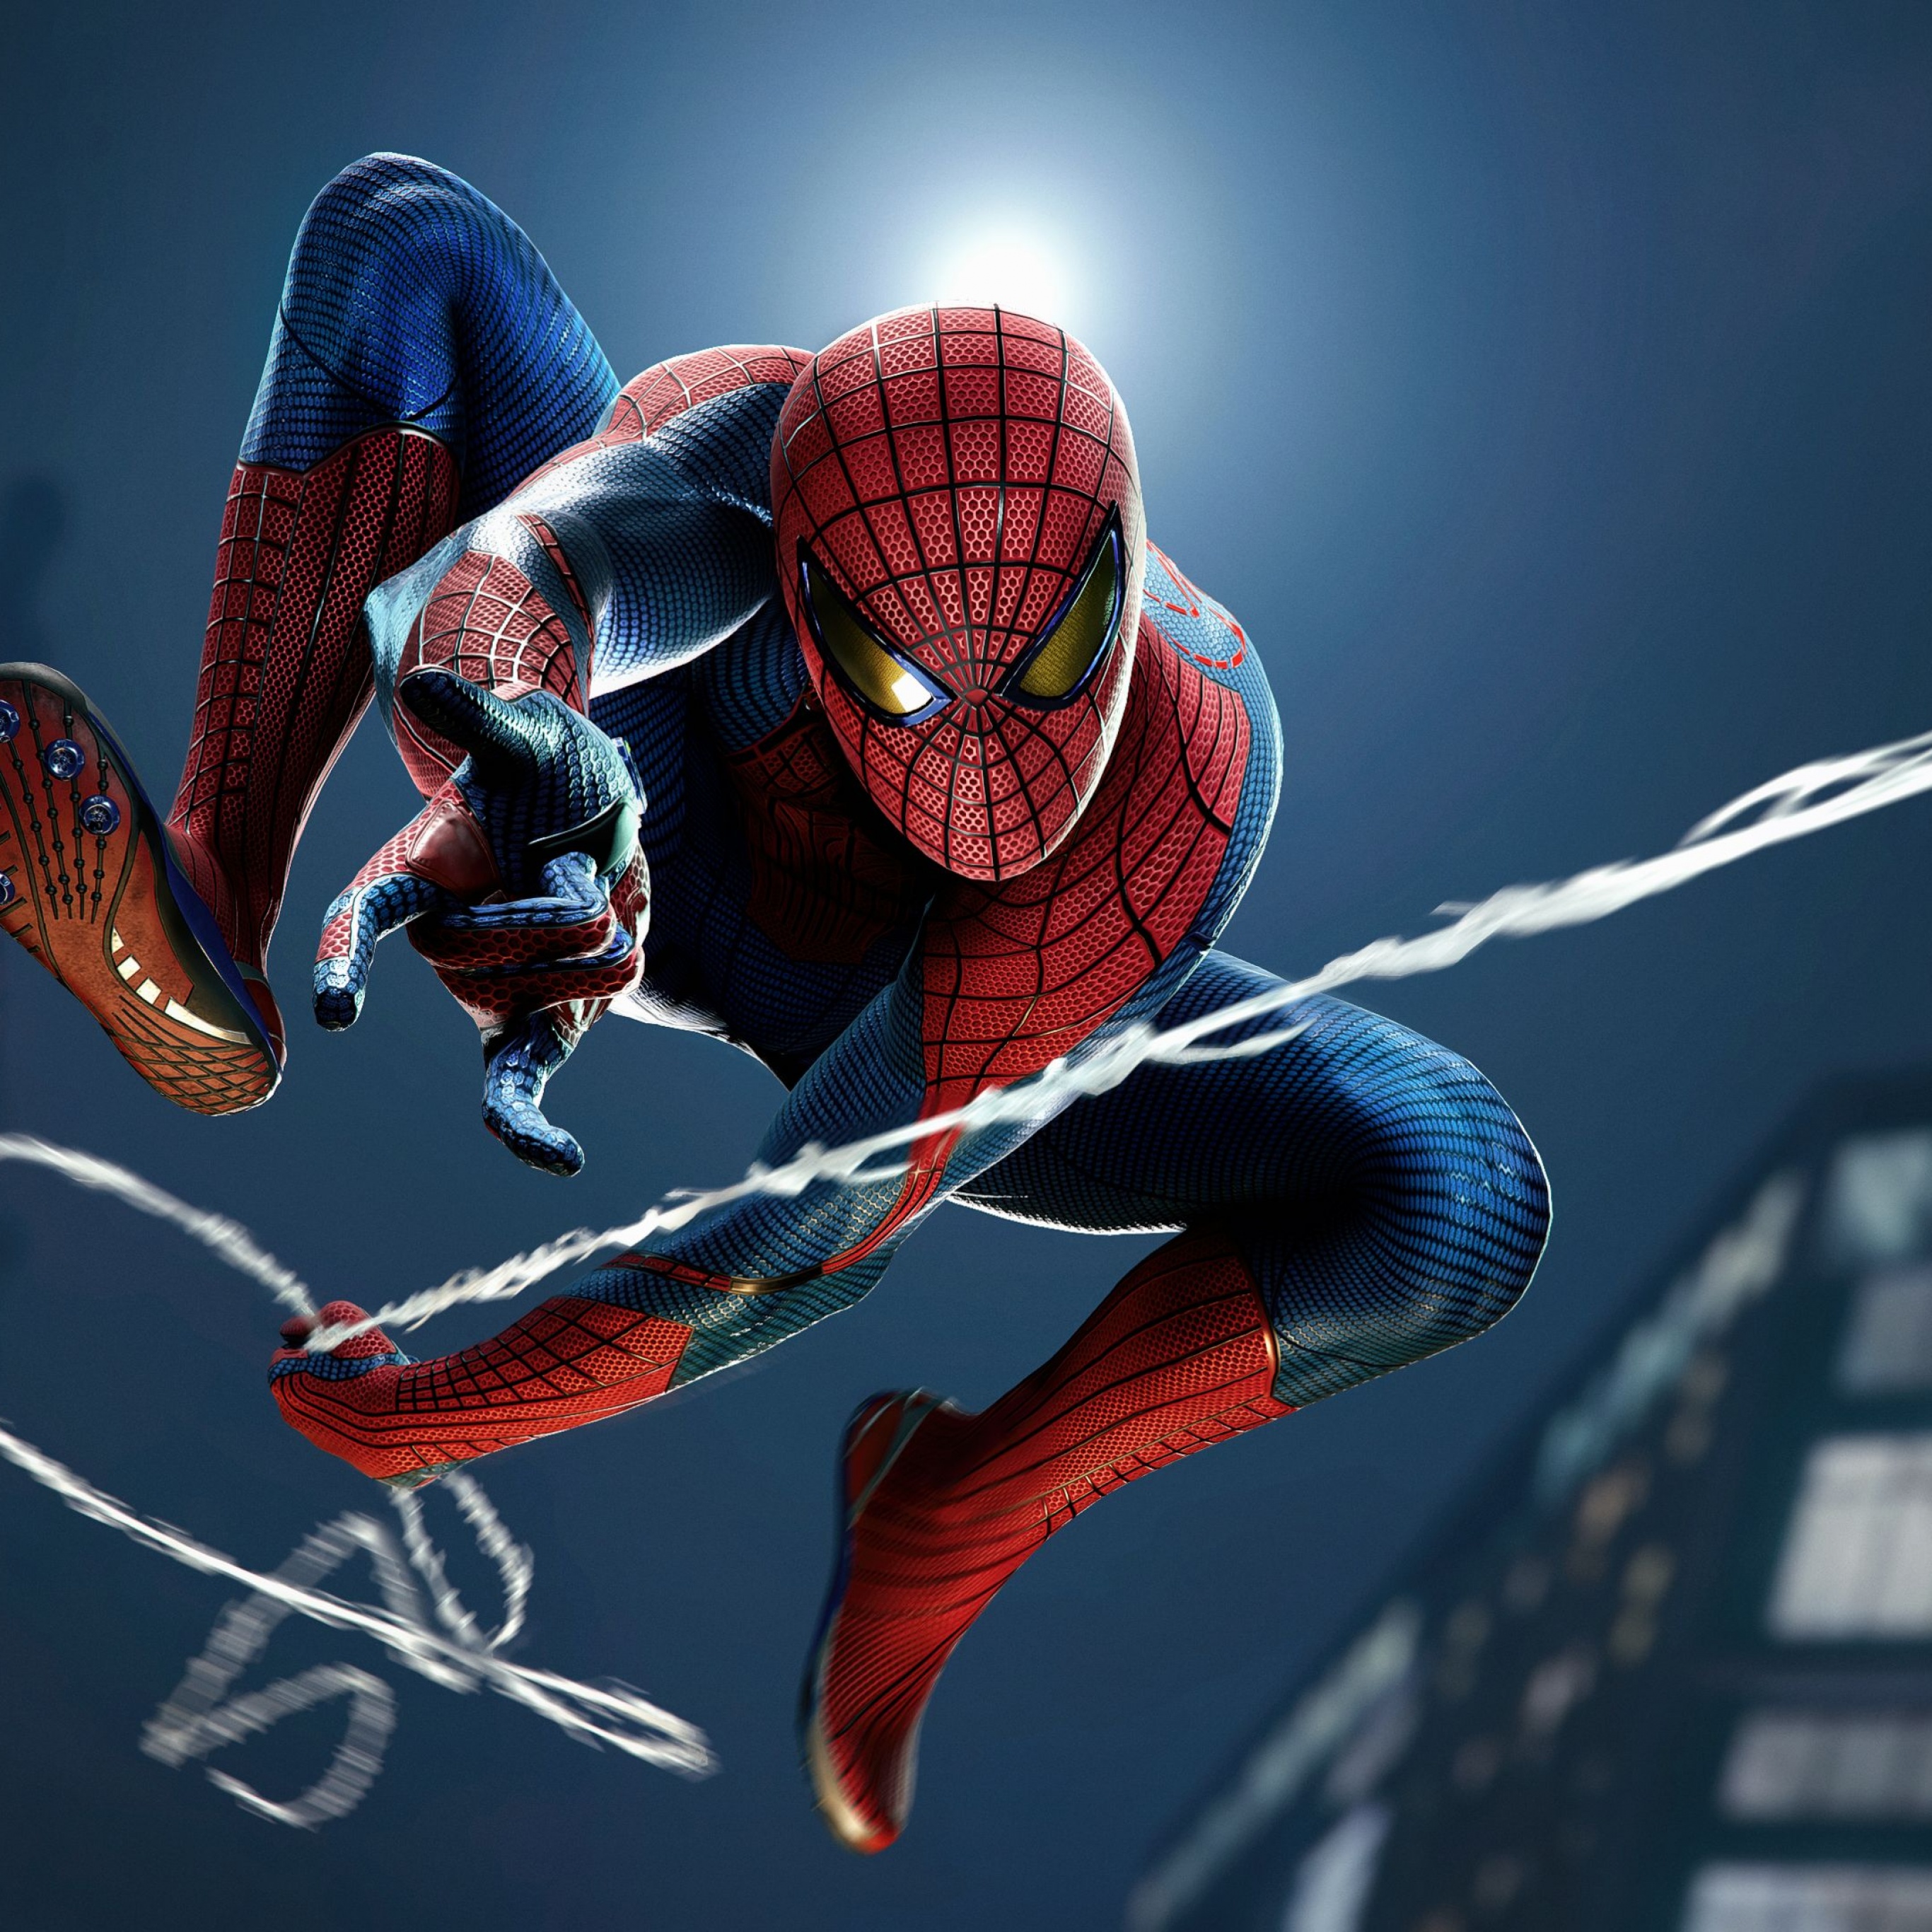 Spiderman swinging between buildings Wallpaper ID5683